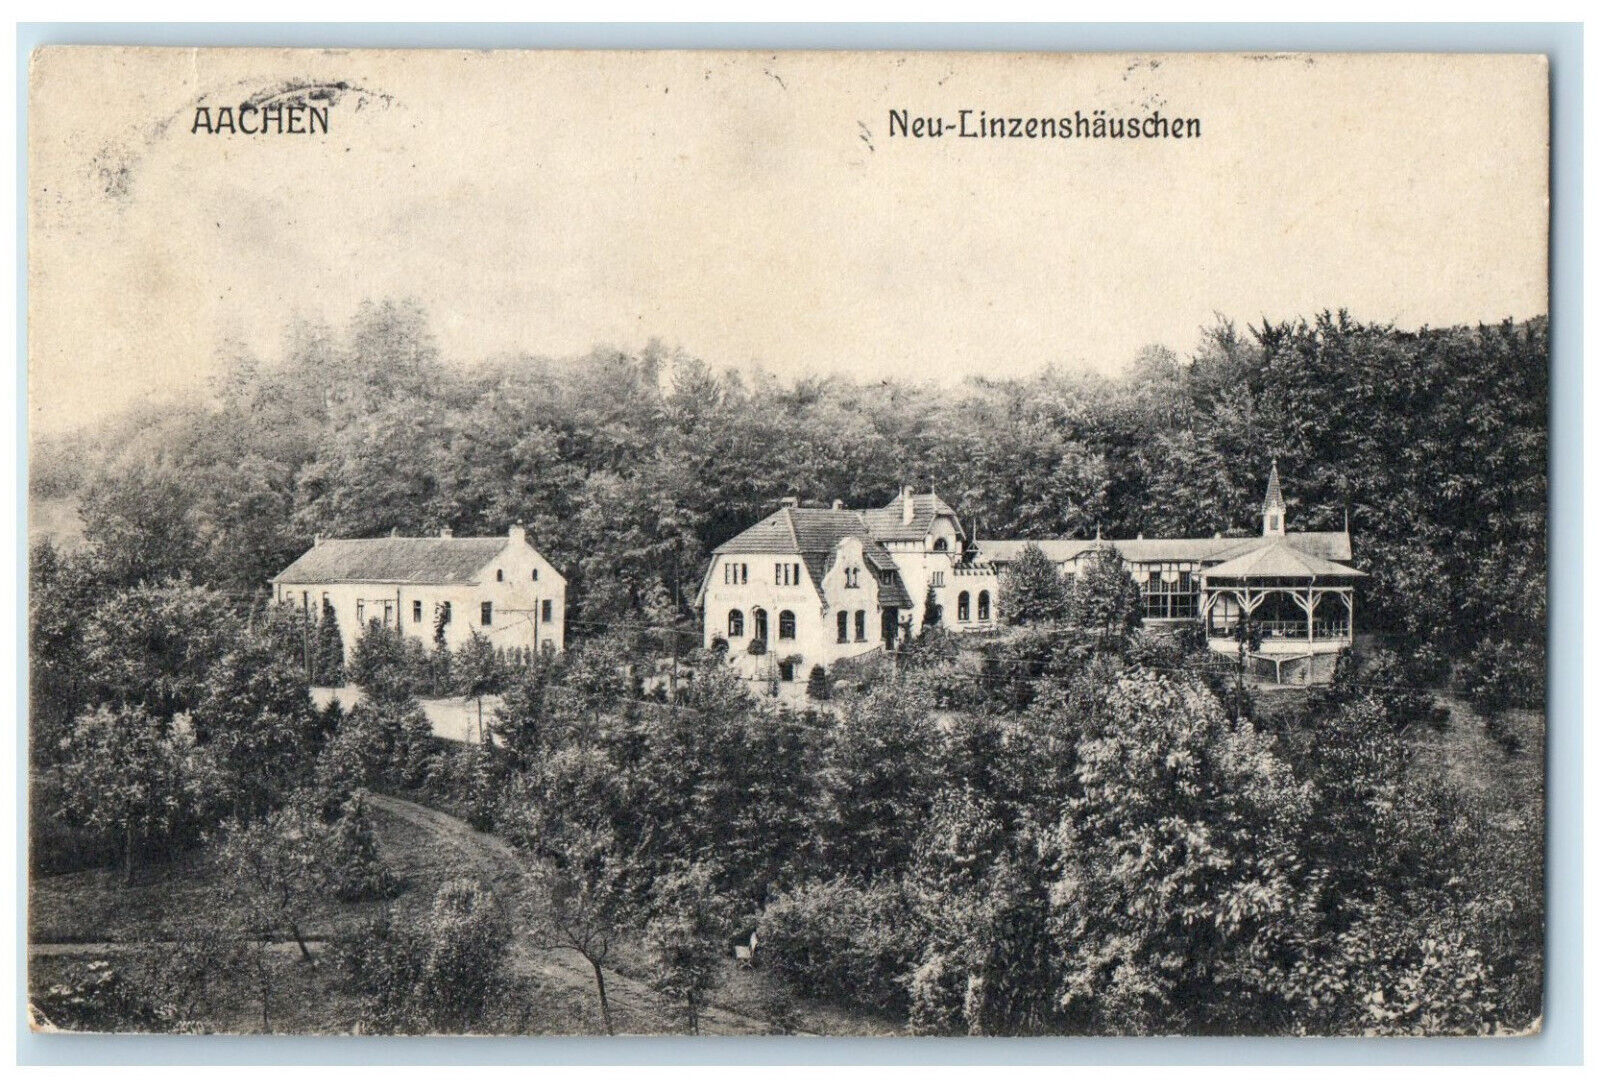 1908 View of Neu-linzenshauschen Aachen Germany Antique Posted Postcard